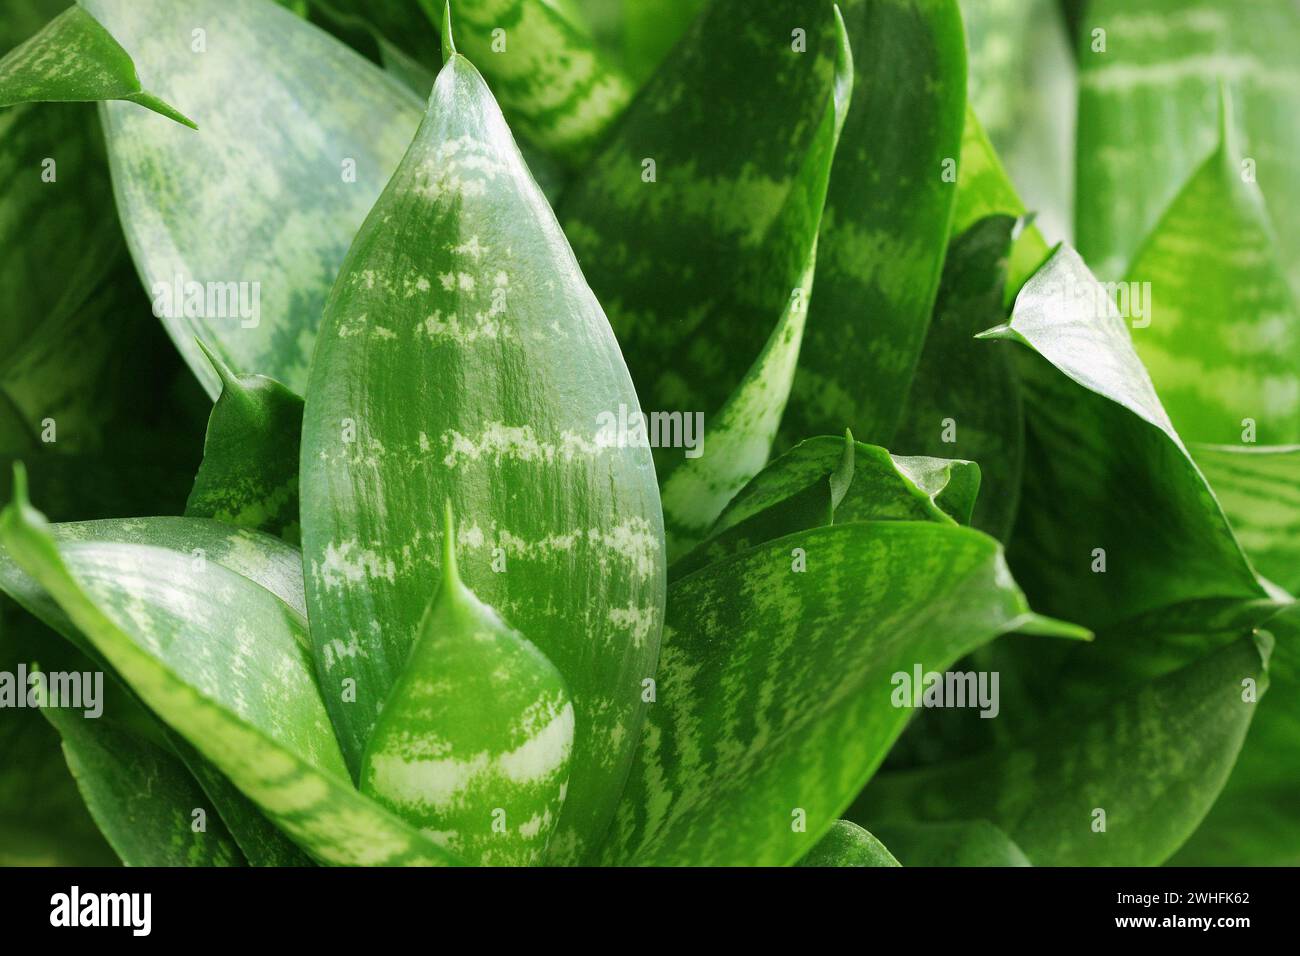 Hintergrund mit grünen tropischen Blättern. Natur Konzept Stockfoto